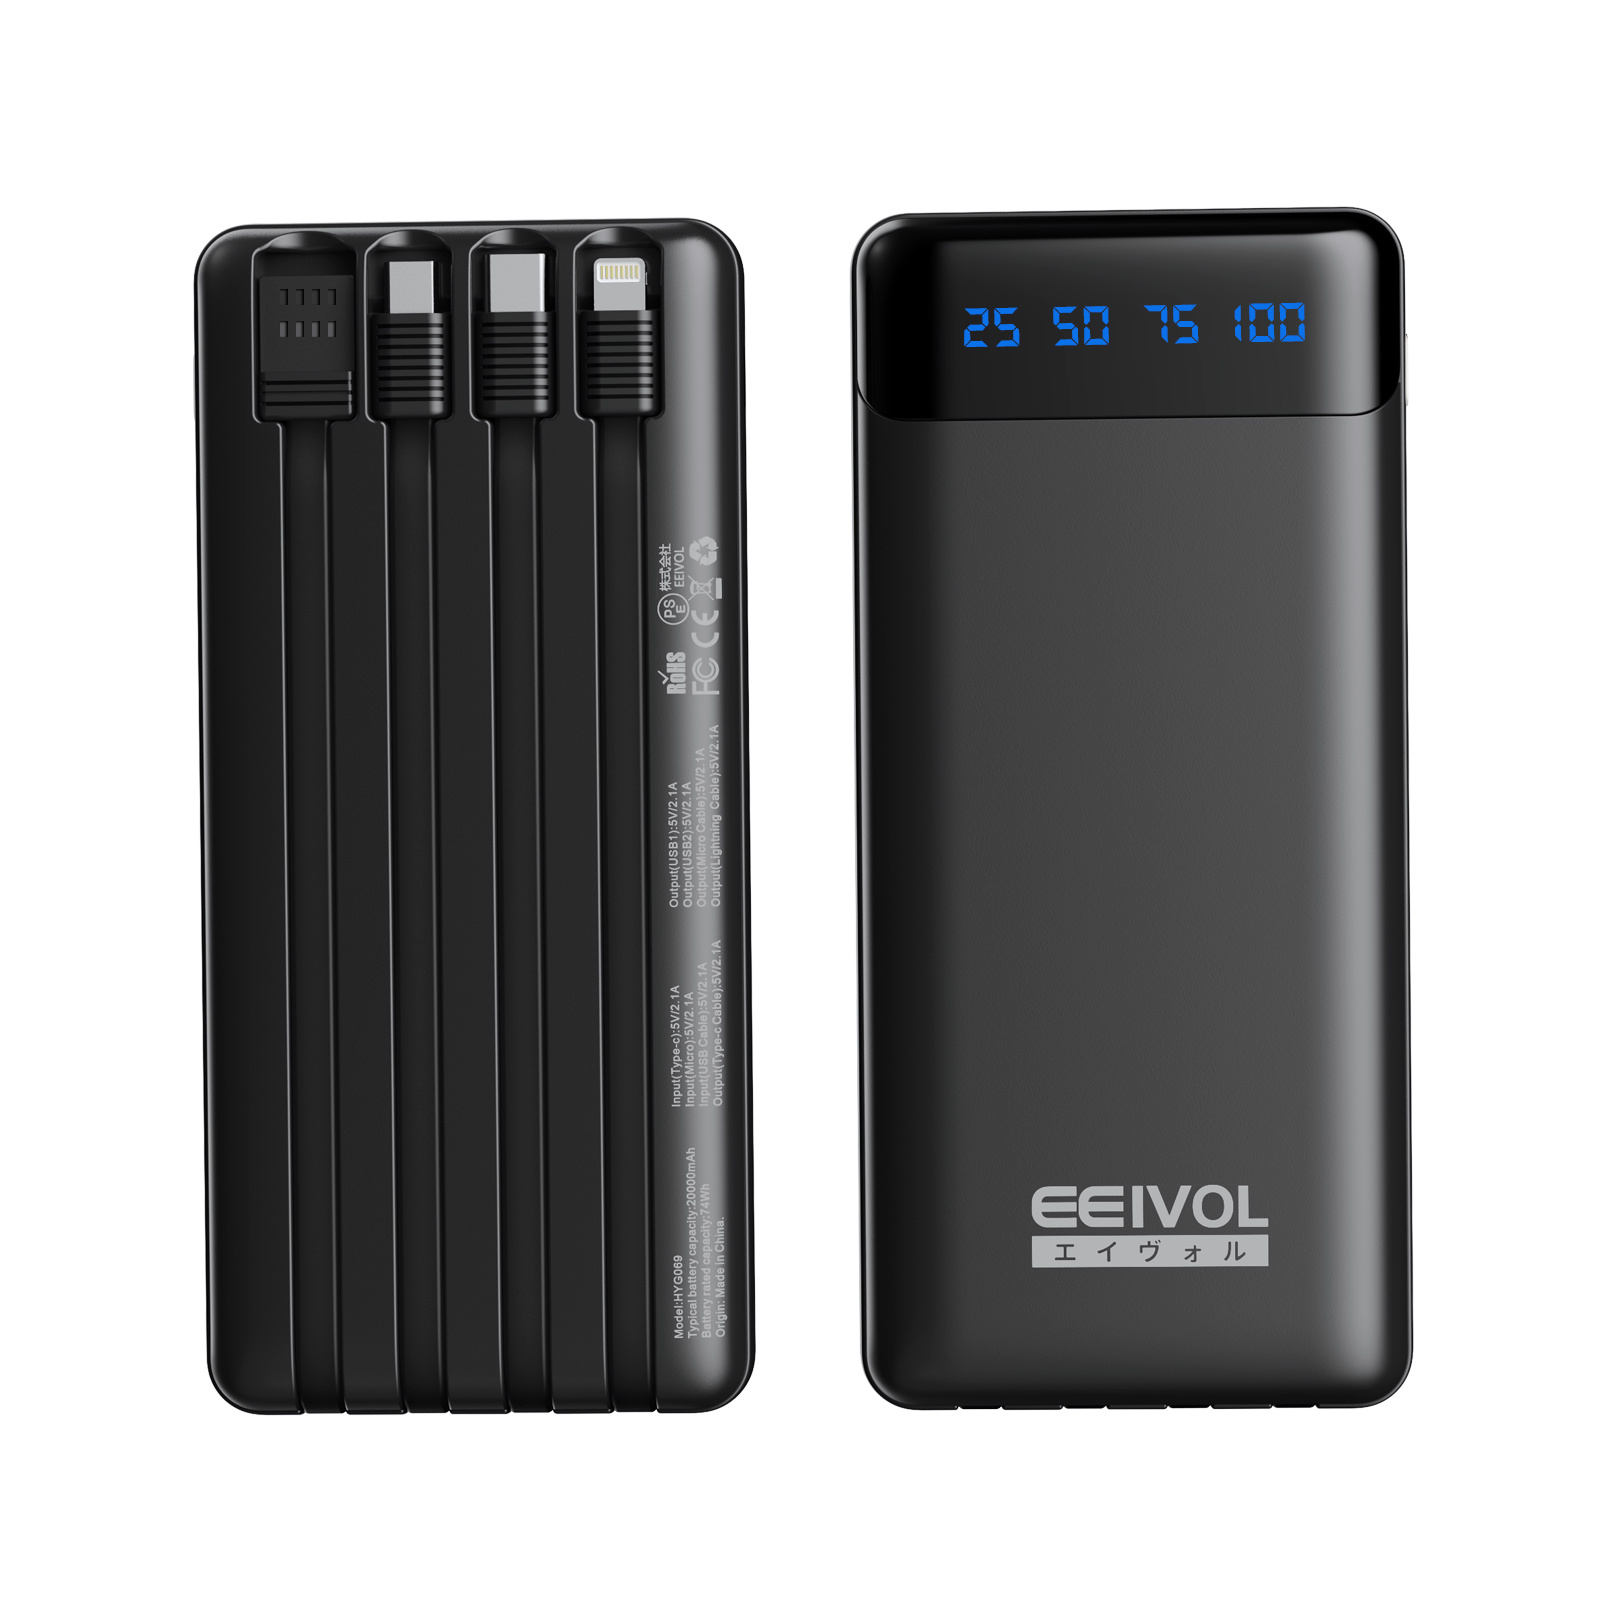 エイヴォル モバイルバッテリー 20000mAh 4本ケーブル内蔵 5台同時充電 LCD残量表示 iOS/Android 全機種対応